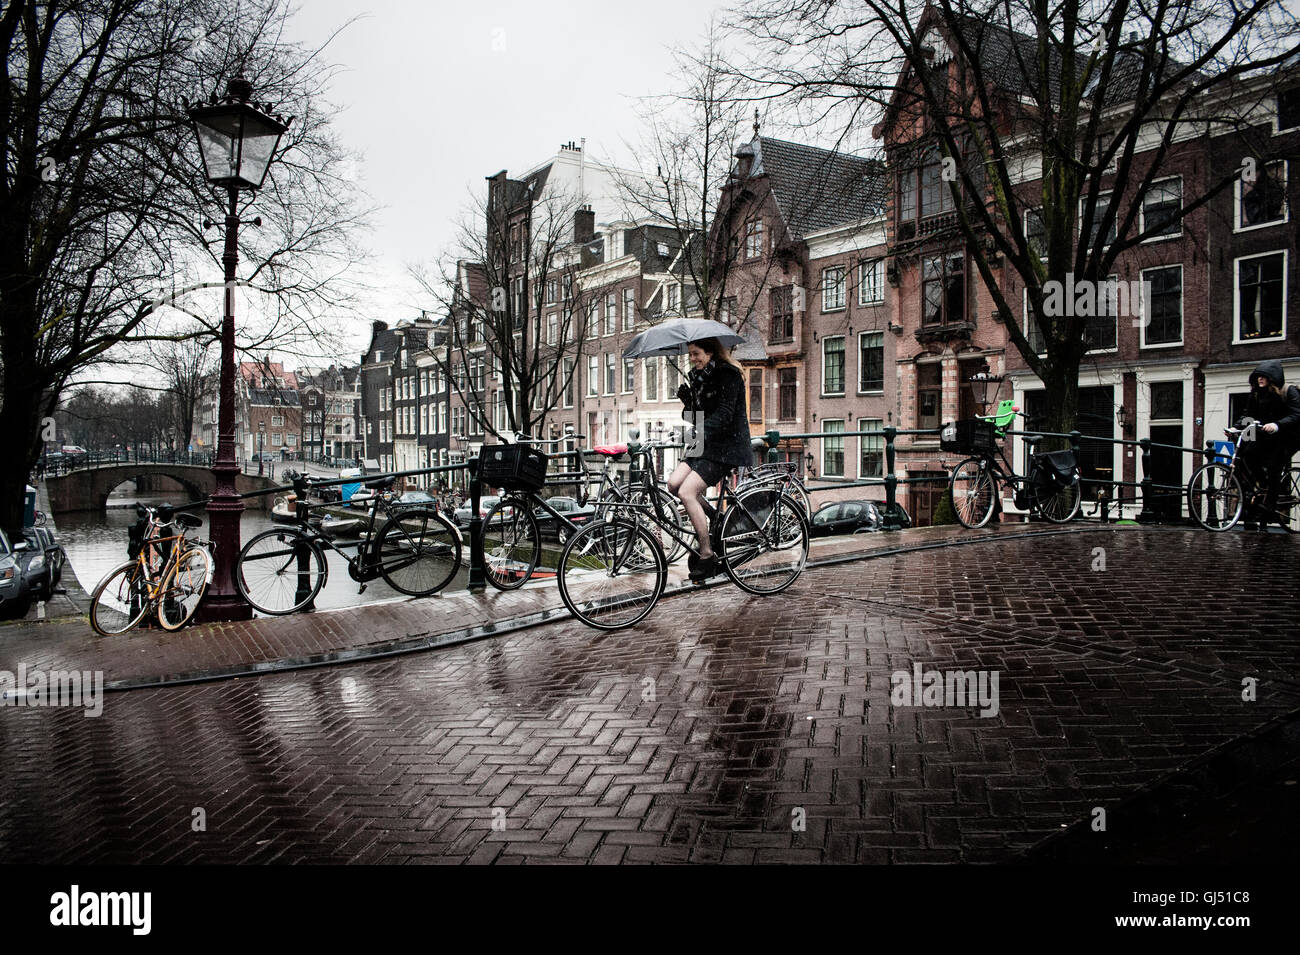 Ein Radfahrer im Regen in Amsterdam mit einem Regenschirm Stockfotografie -  Alamy